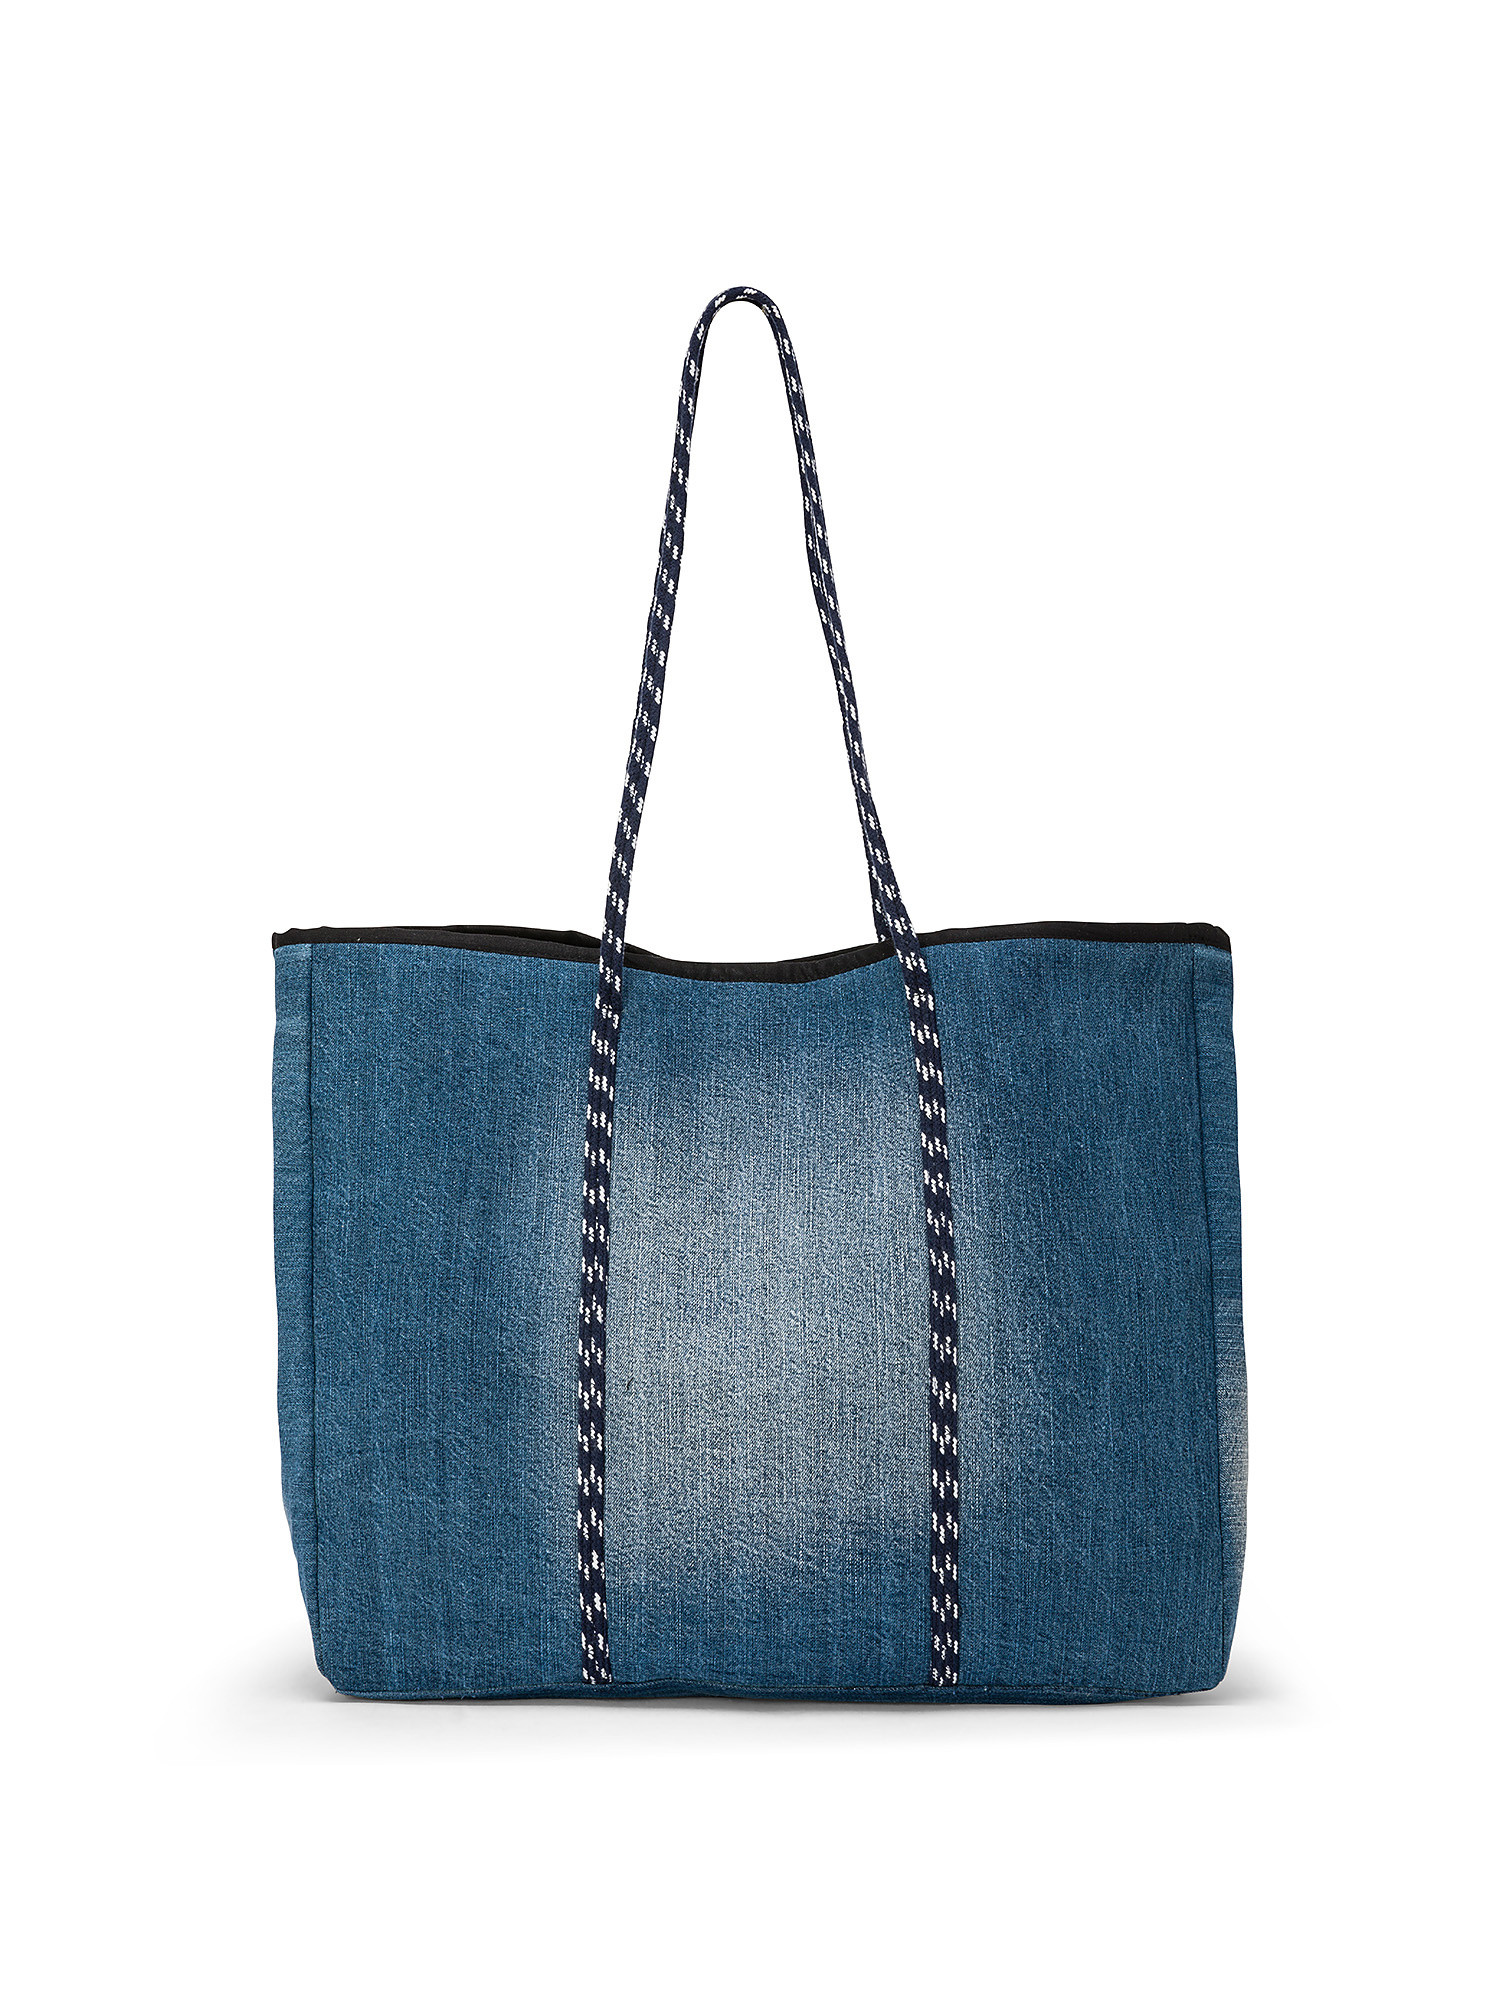 Shopping bag denim di cotone, Azzurro, large image number 0